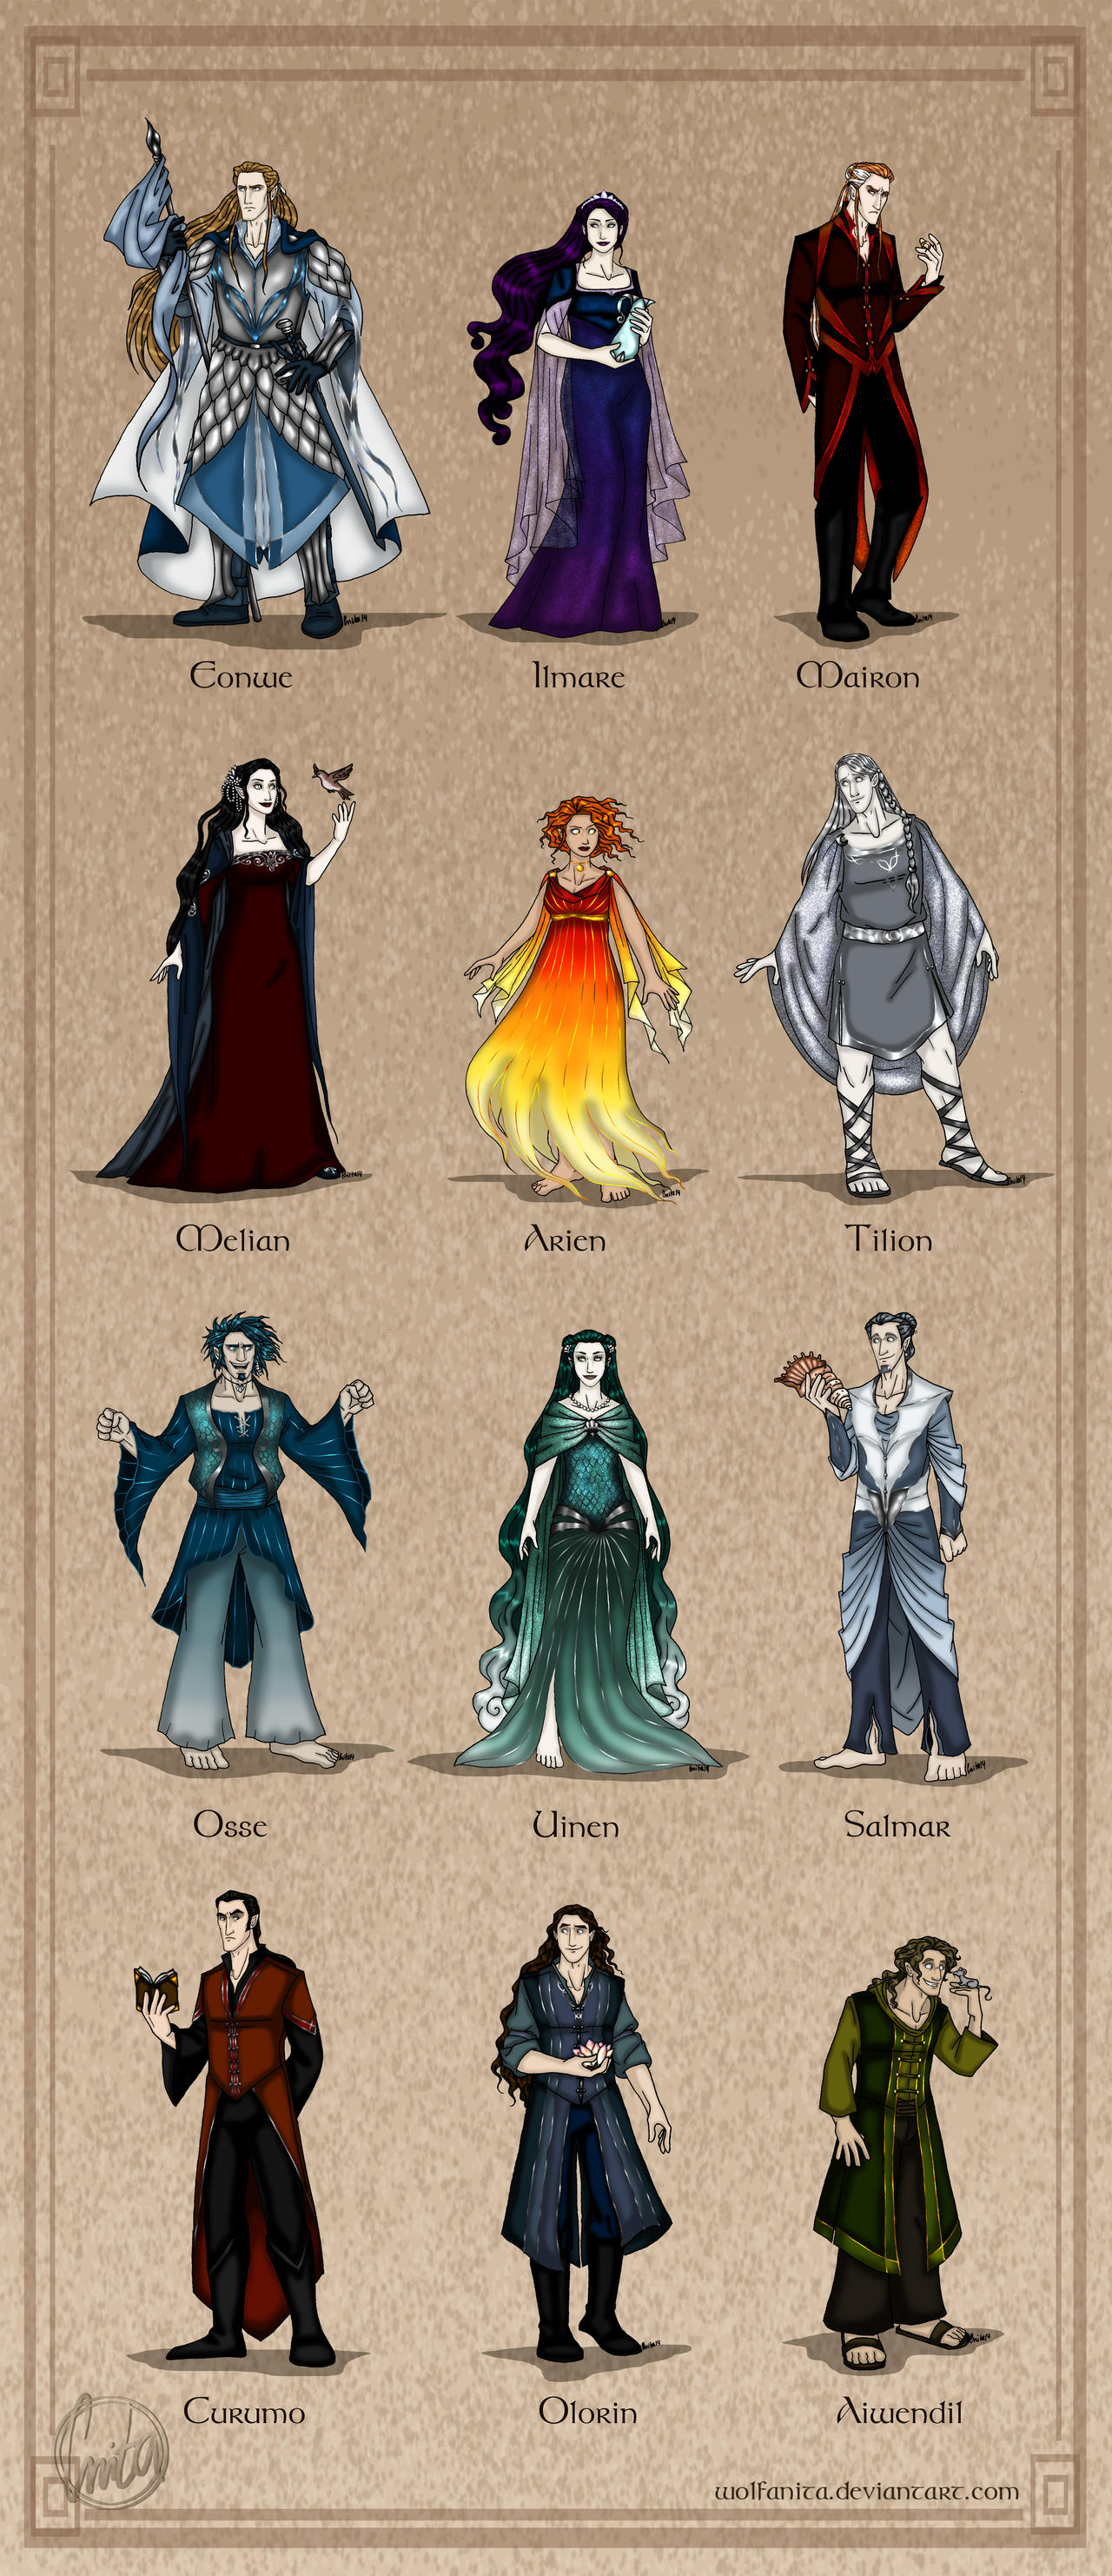 The Silmarillion: The Maiar by wolfanita on DeviantArt